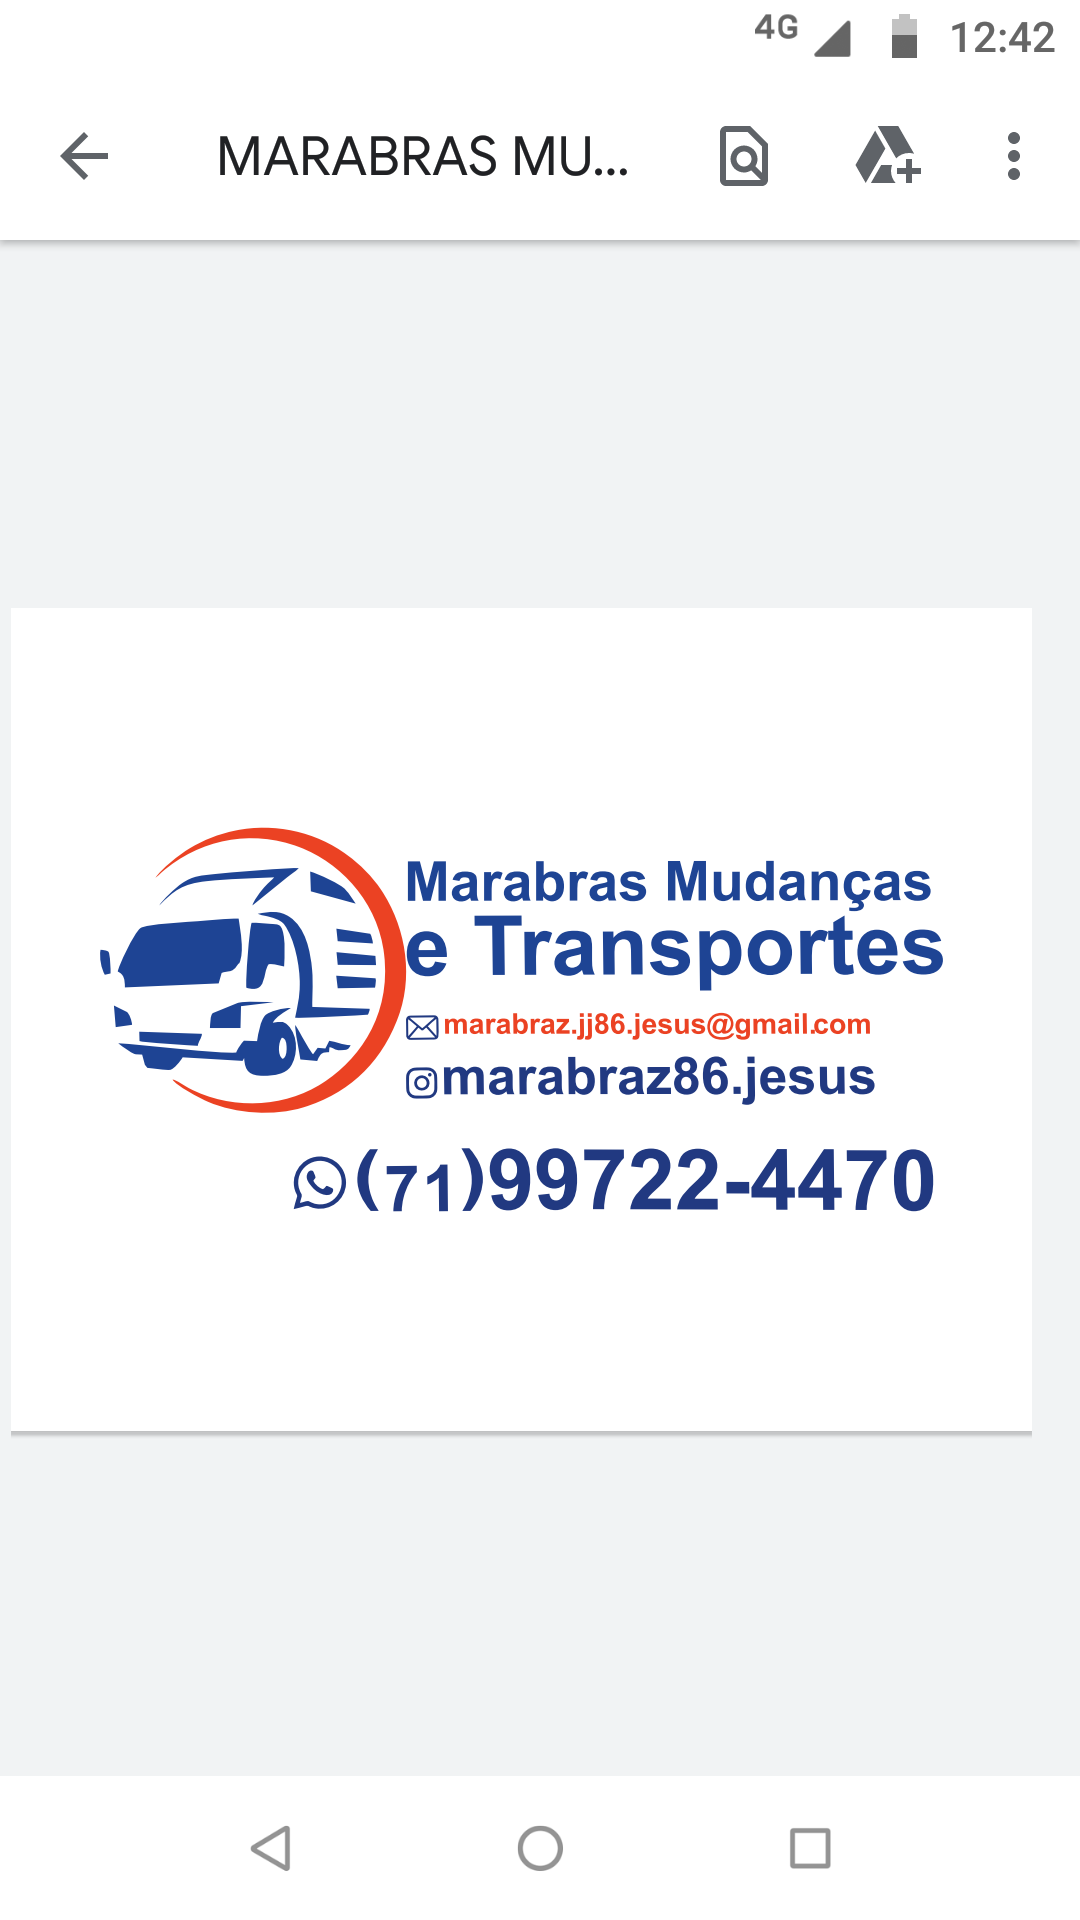 Transportadora MARABRAS MUDANÇAS TRANSPORTES